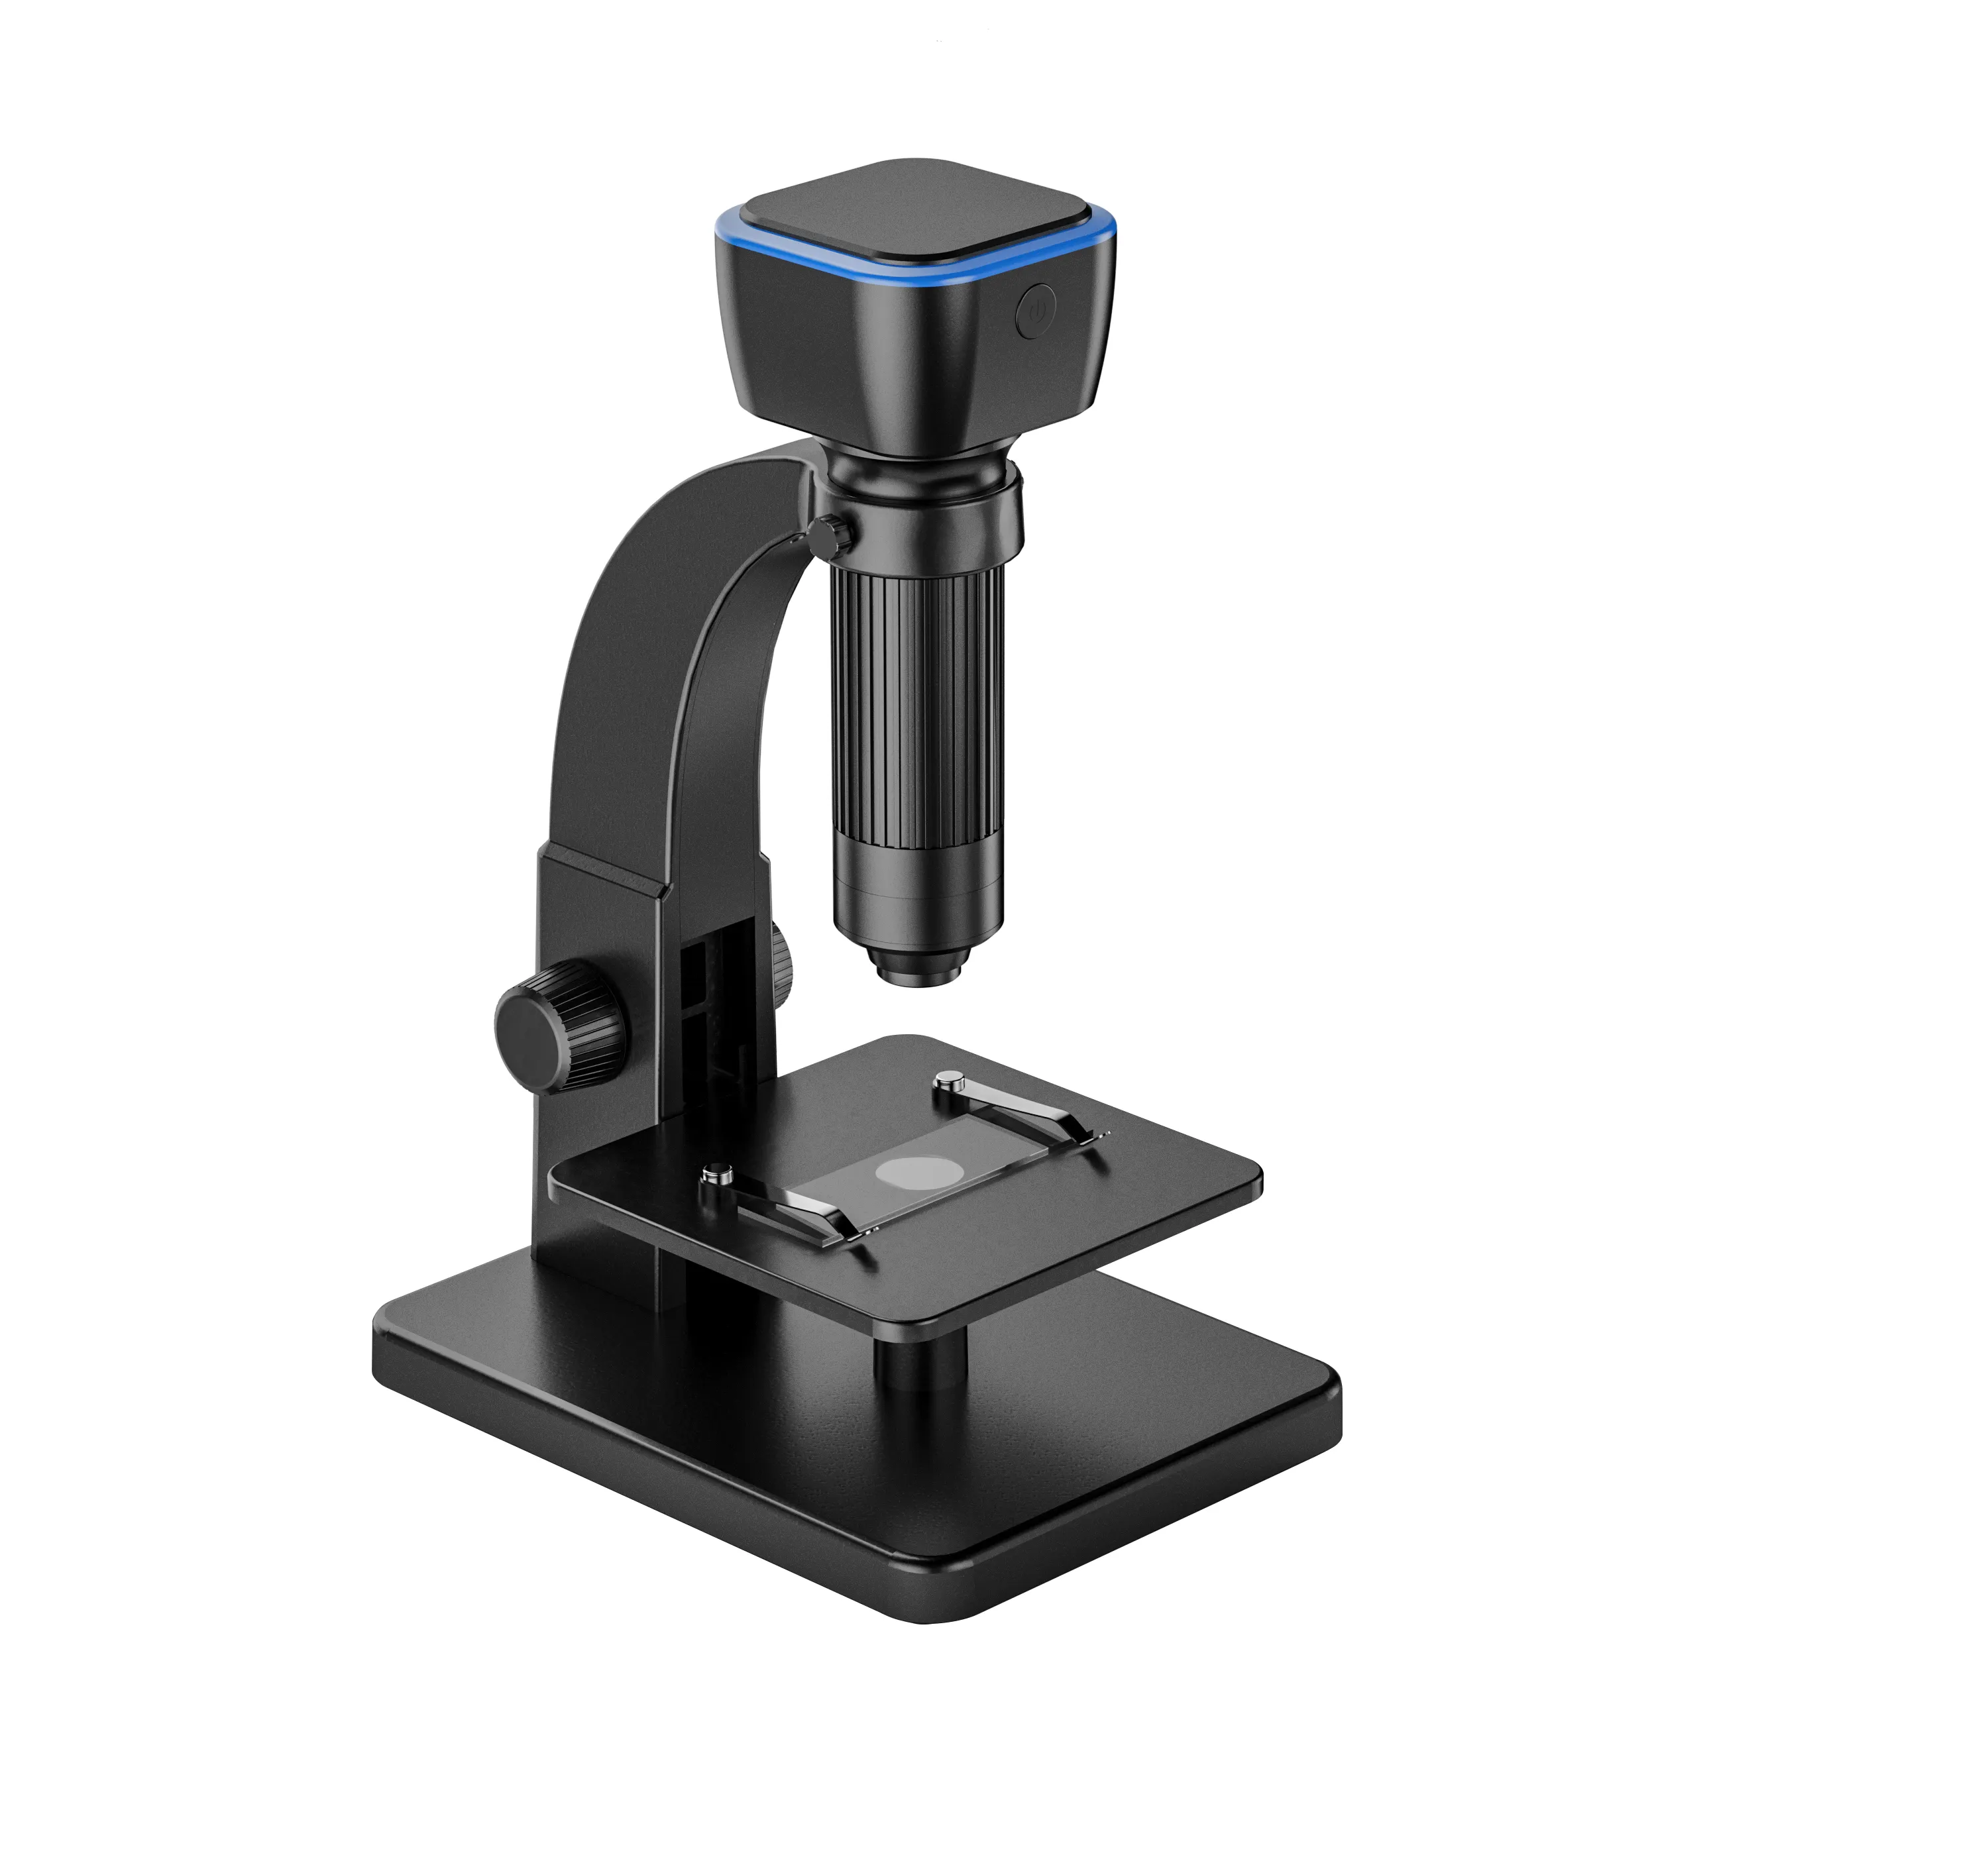 Microscopio digitale 315W WiFi Max-see con endoscopio per fotocamera compatibile con microscopio digitale Windows/Mac OS per saldatura